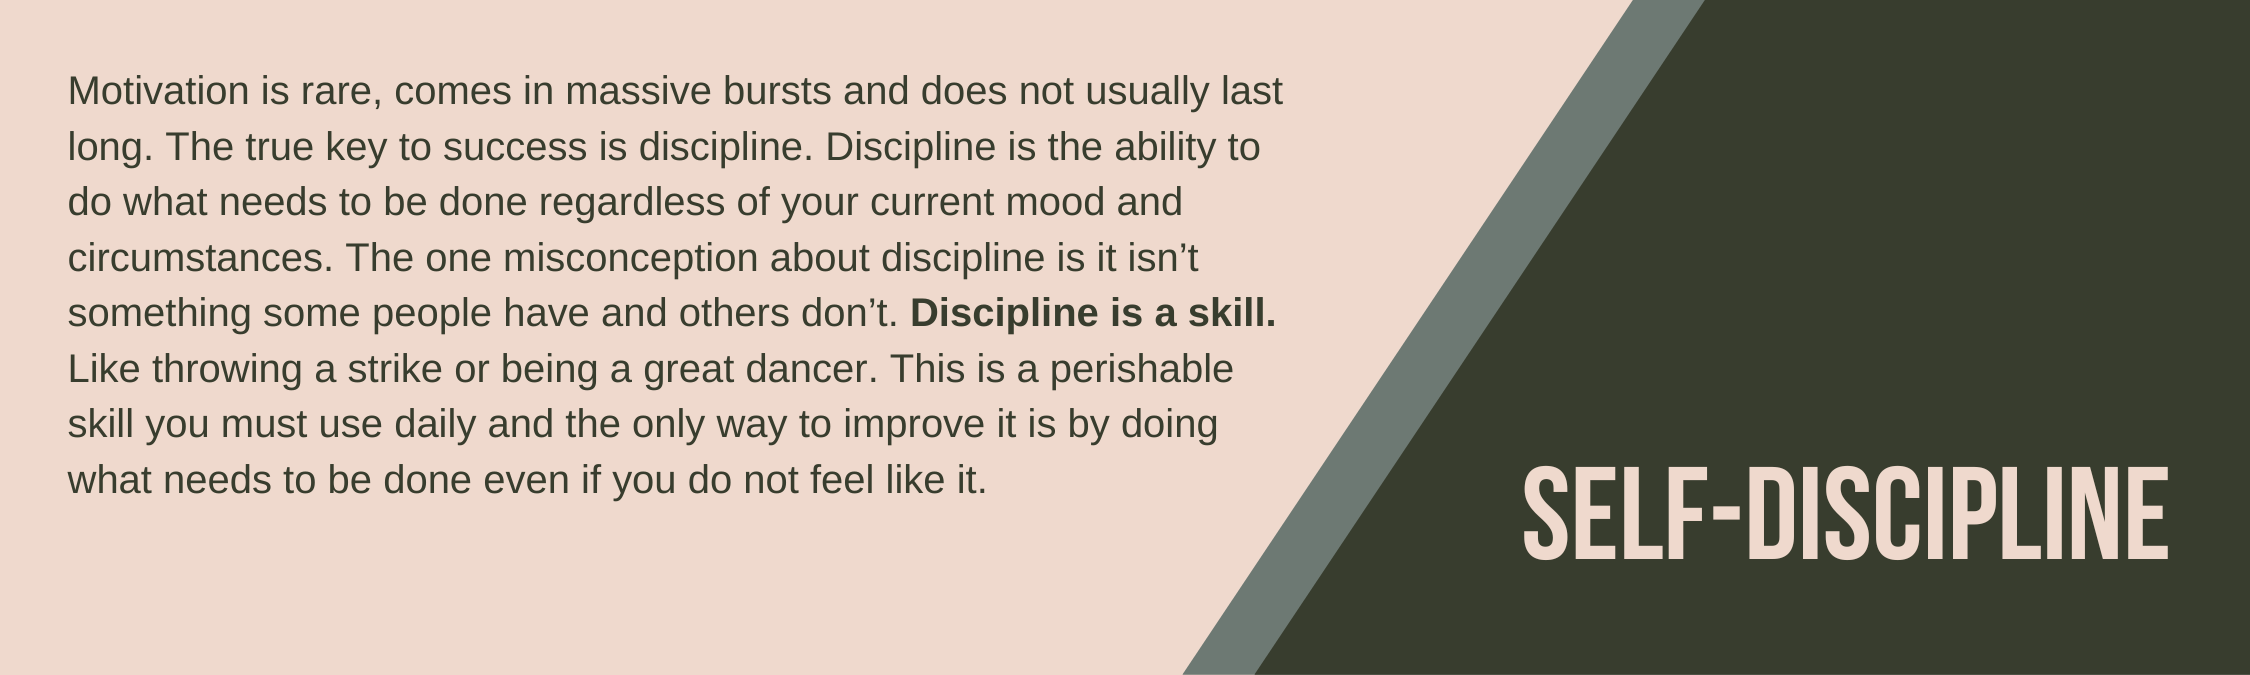 Self-Discipline.png